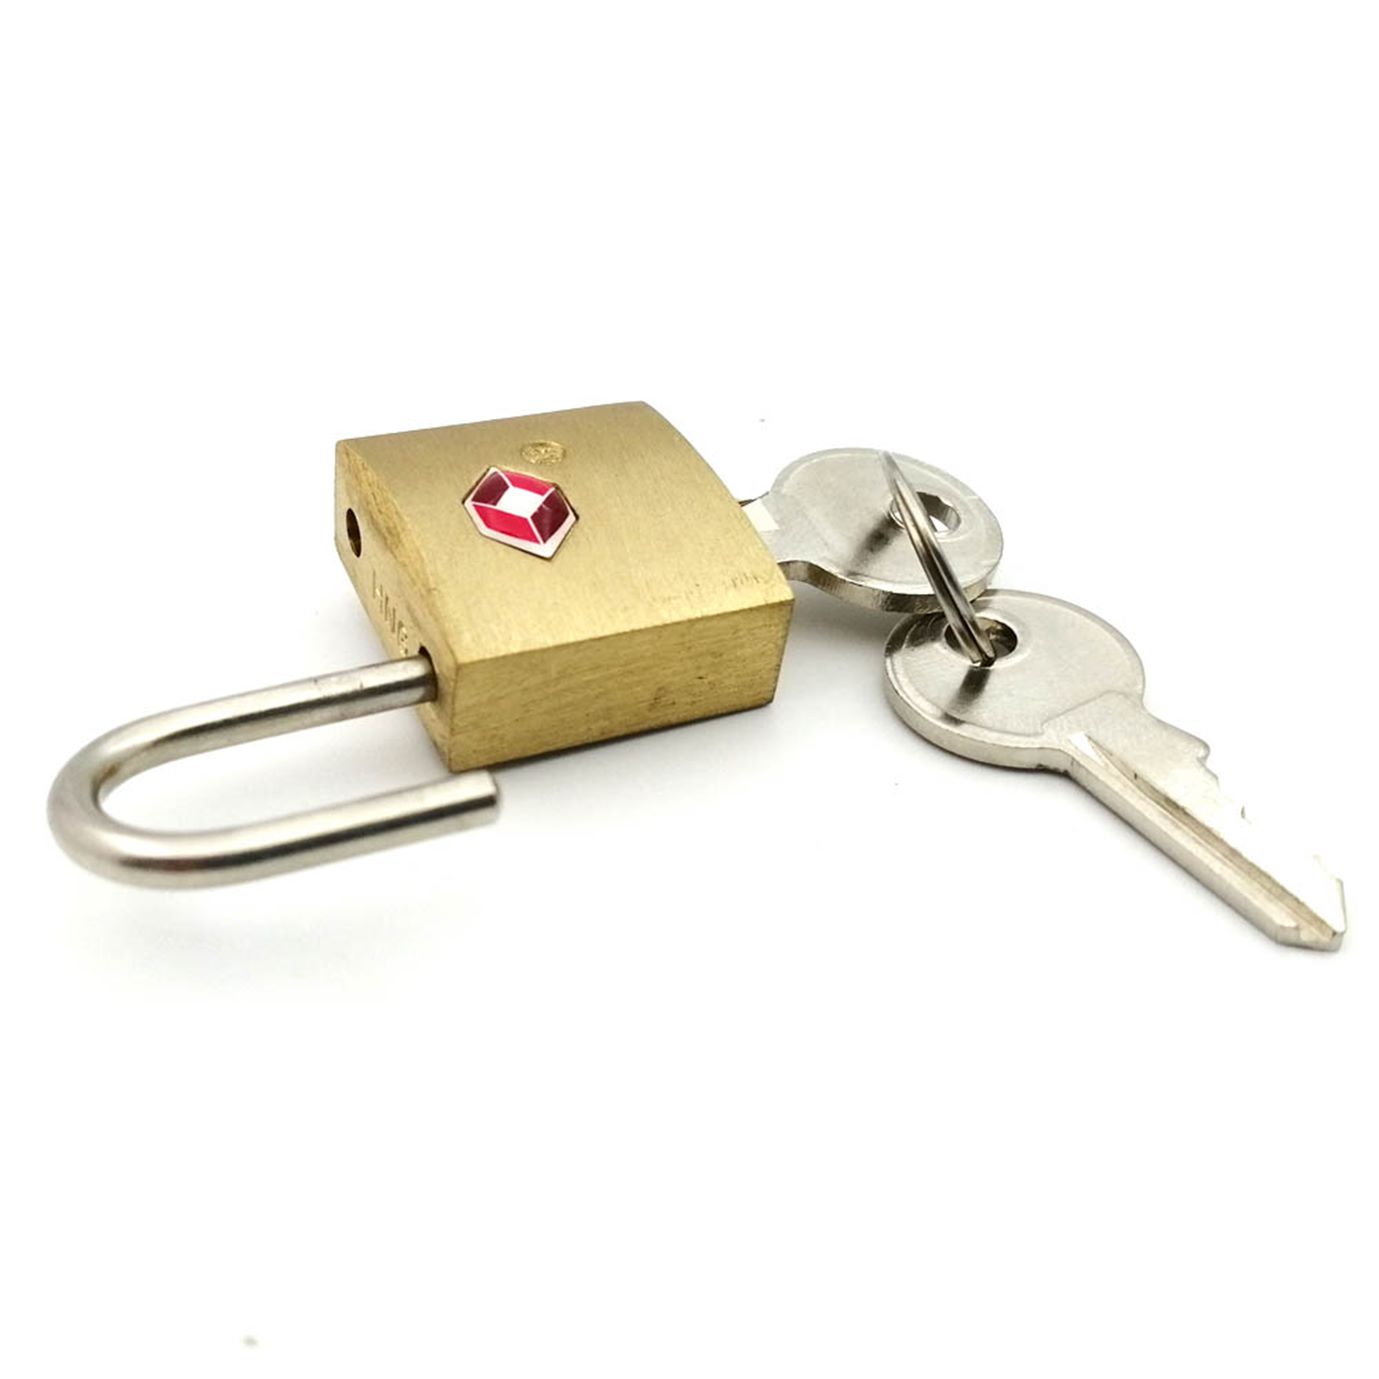 TSA386 纯铜安全锁TSA海关锁钥匙开通关锁箱包挂锁正品授权产品图